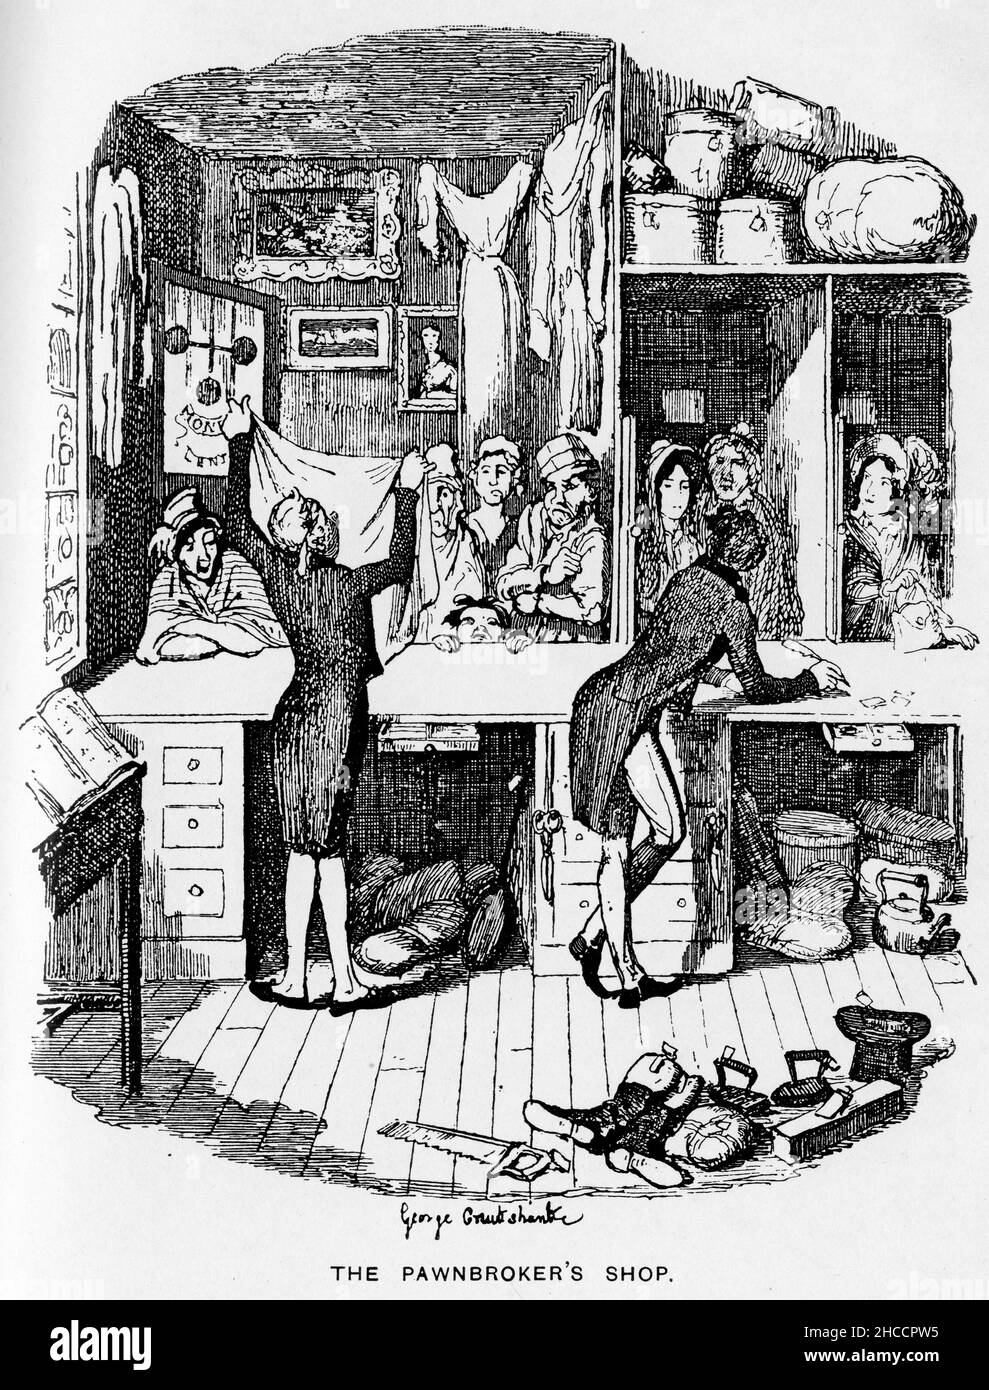 Incisione della bottega del pawnbroker, una scena di un libro di epoca vittoriana di Charles Dickens, pubblicato intorno al 1908 Foto Stock